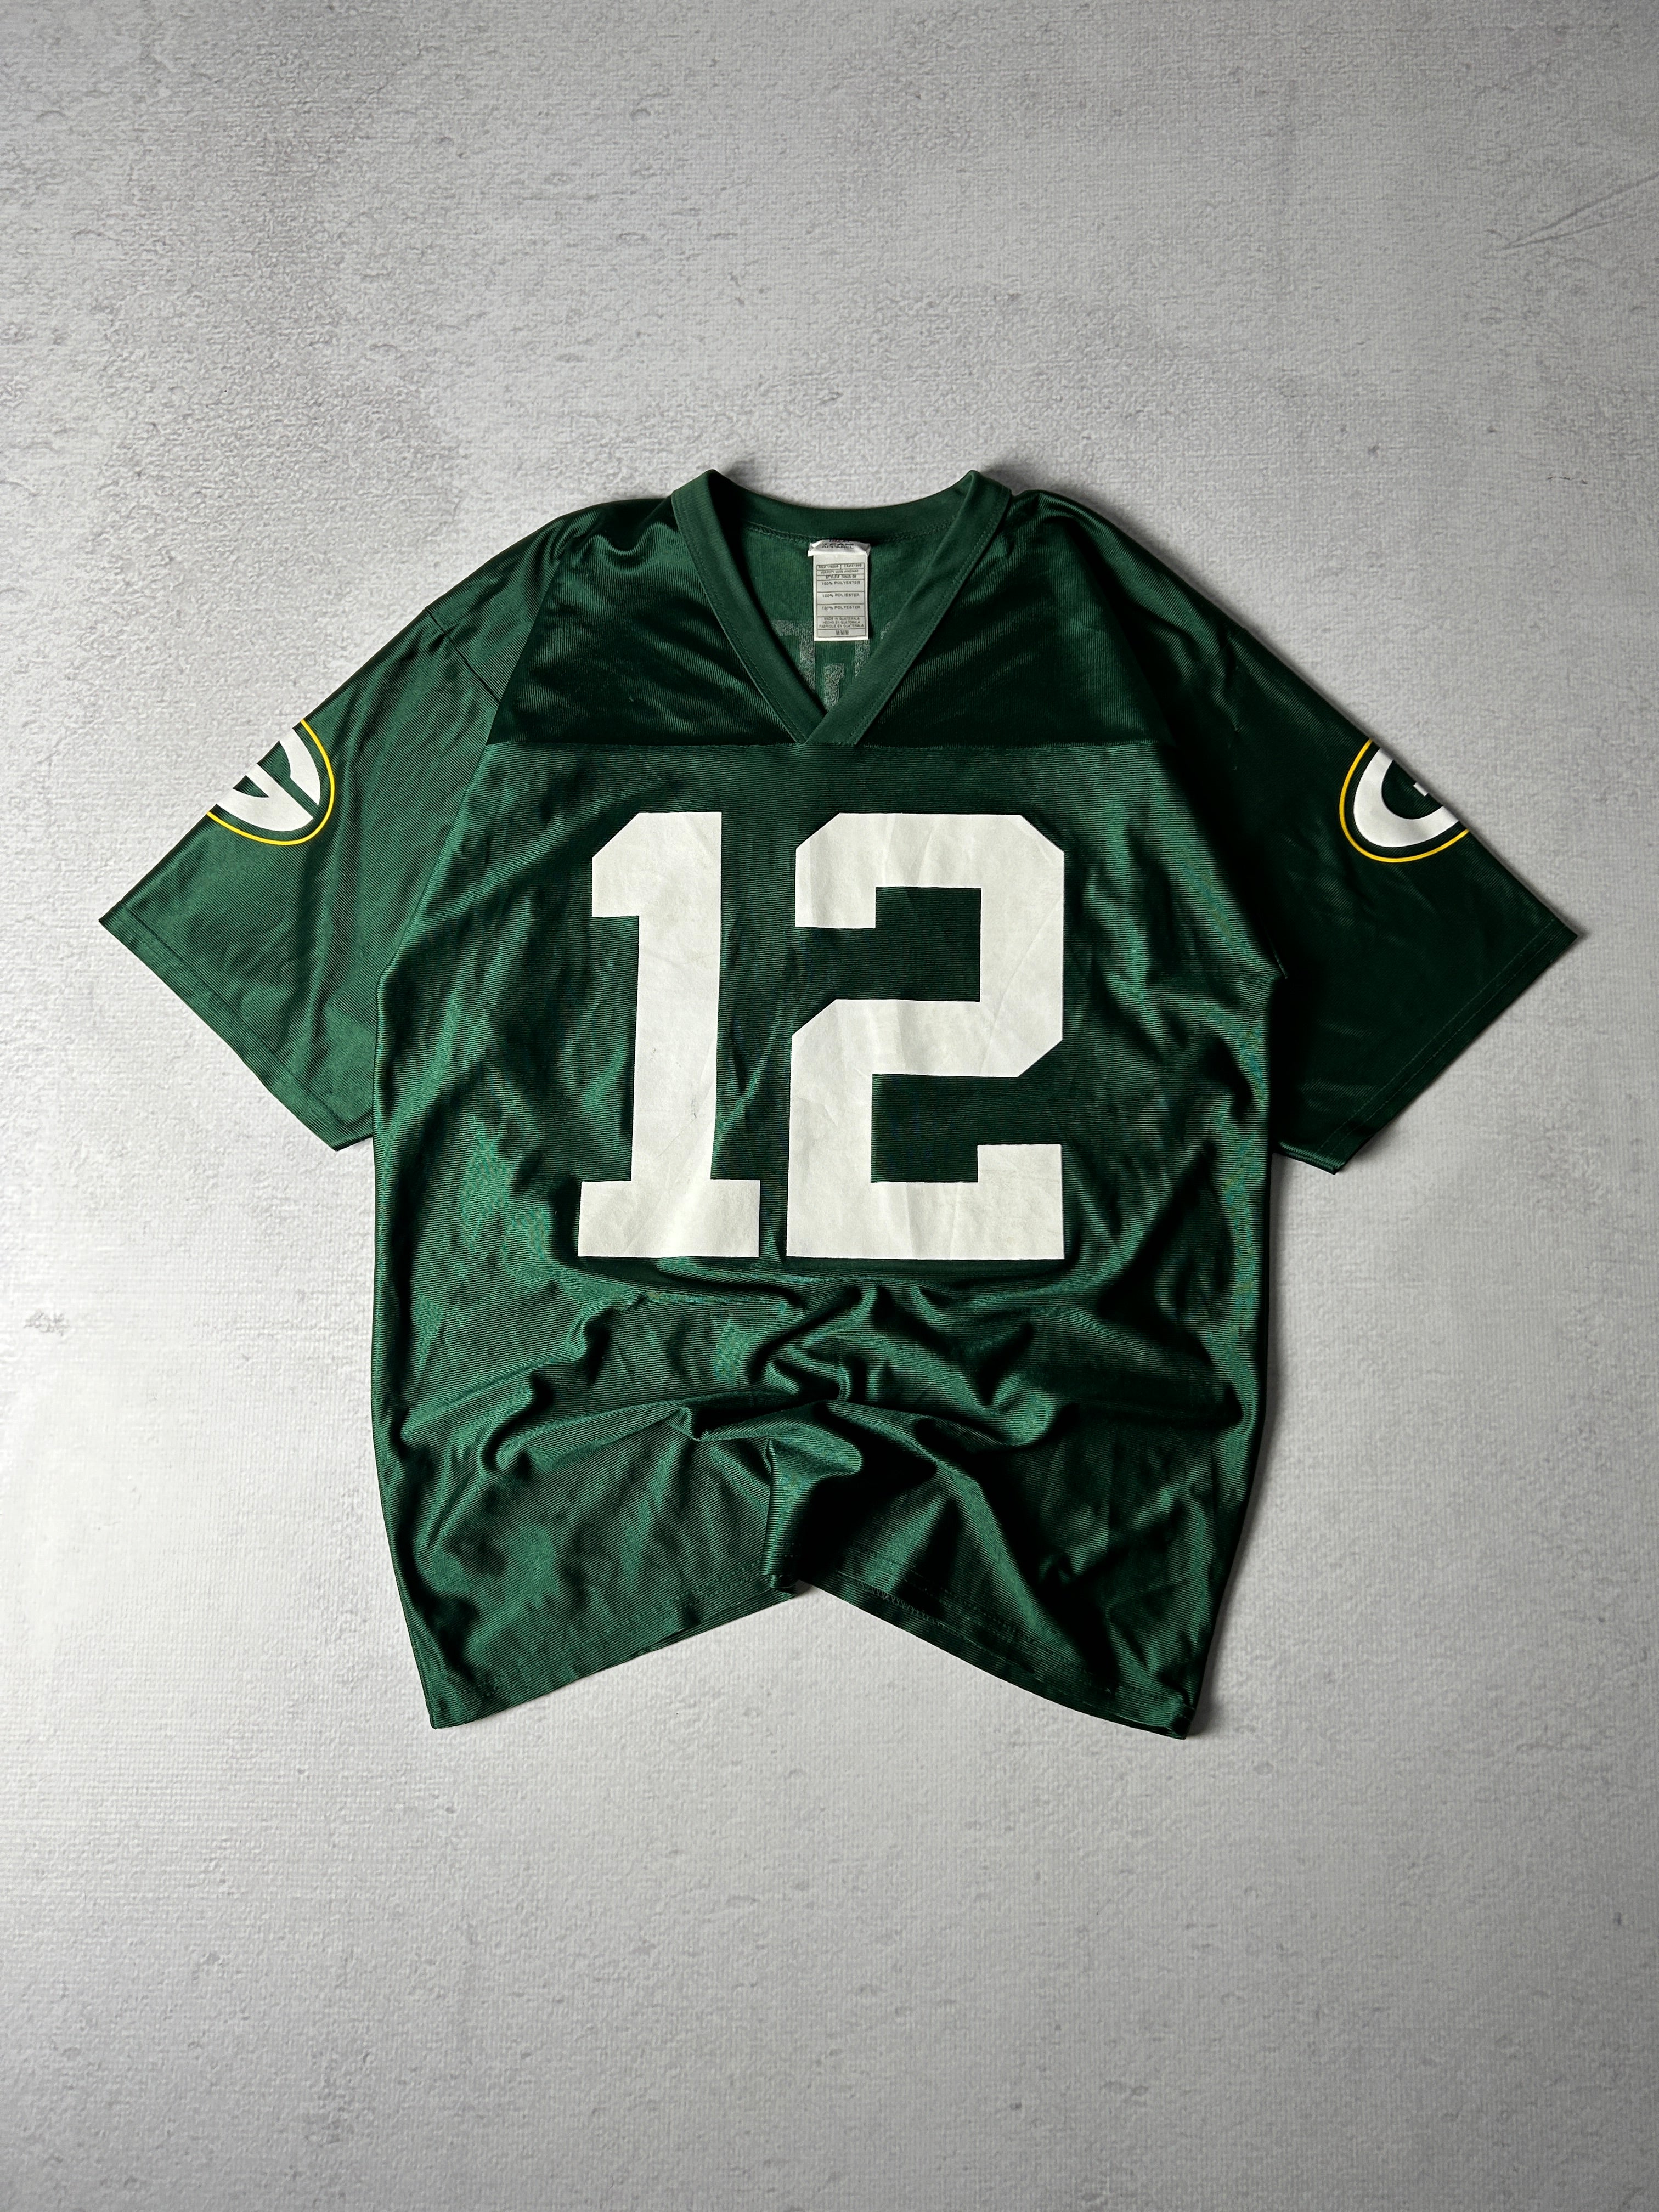 Vintage NFL Green Bay Packers Aaron Rogers #12 Jersey - Men's Medium